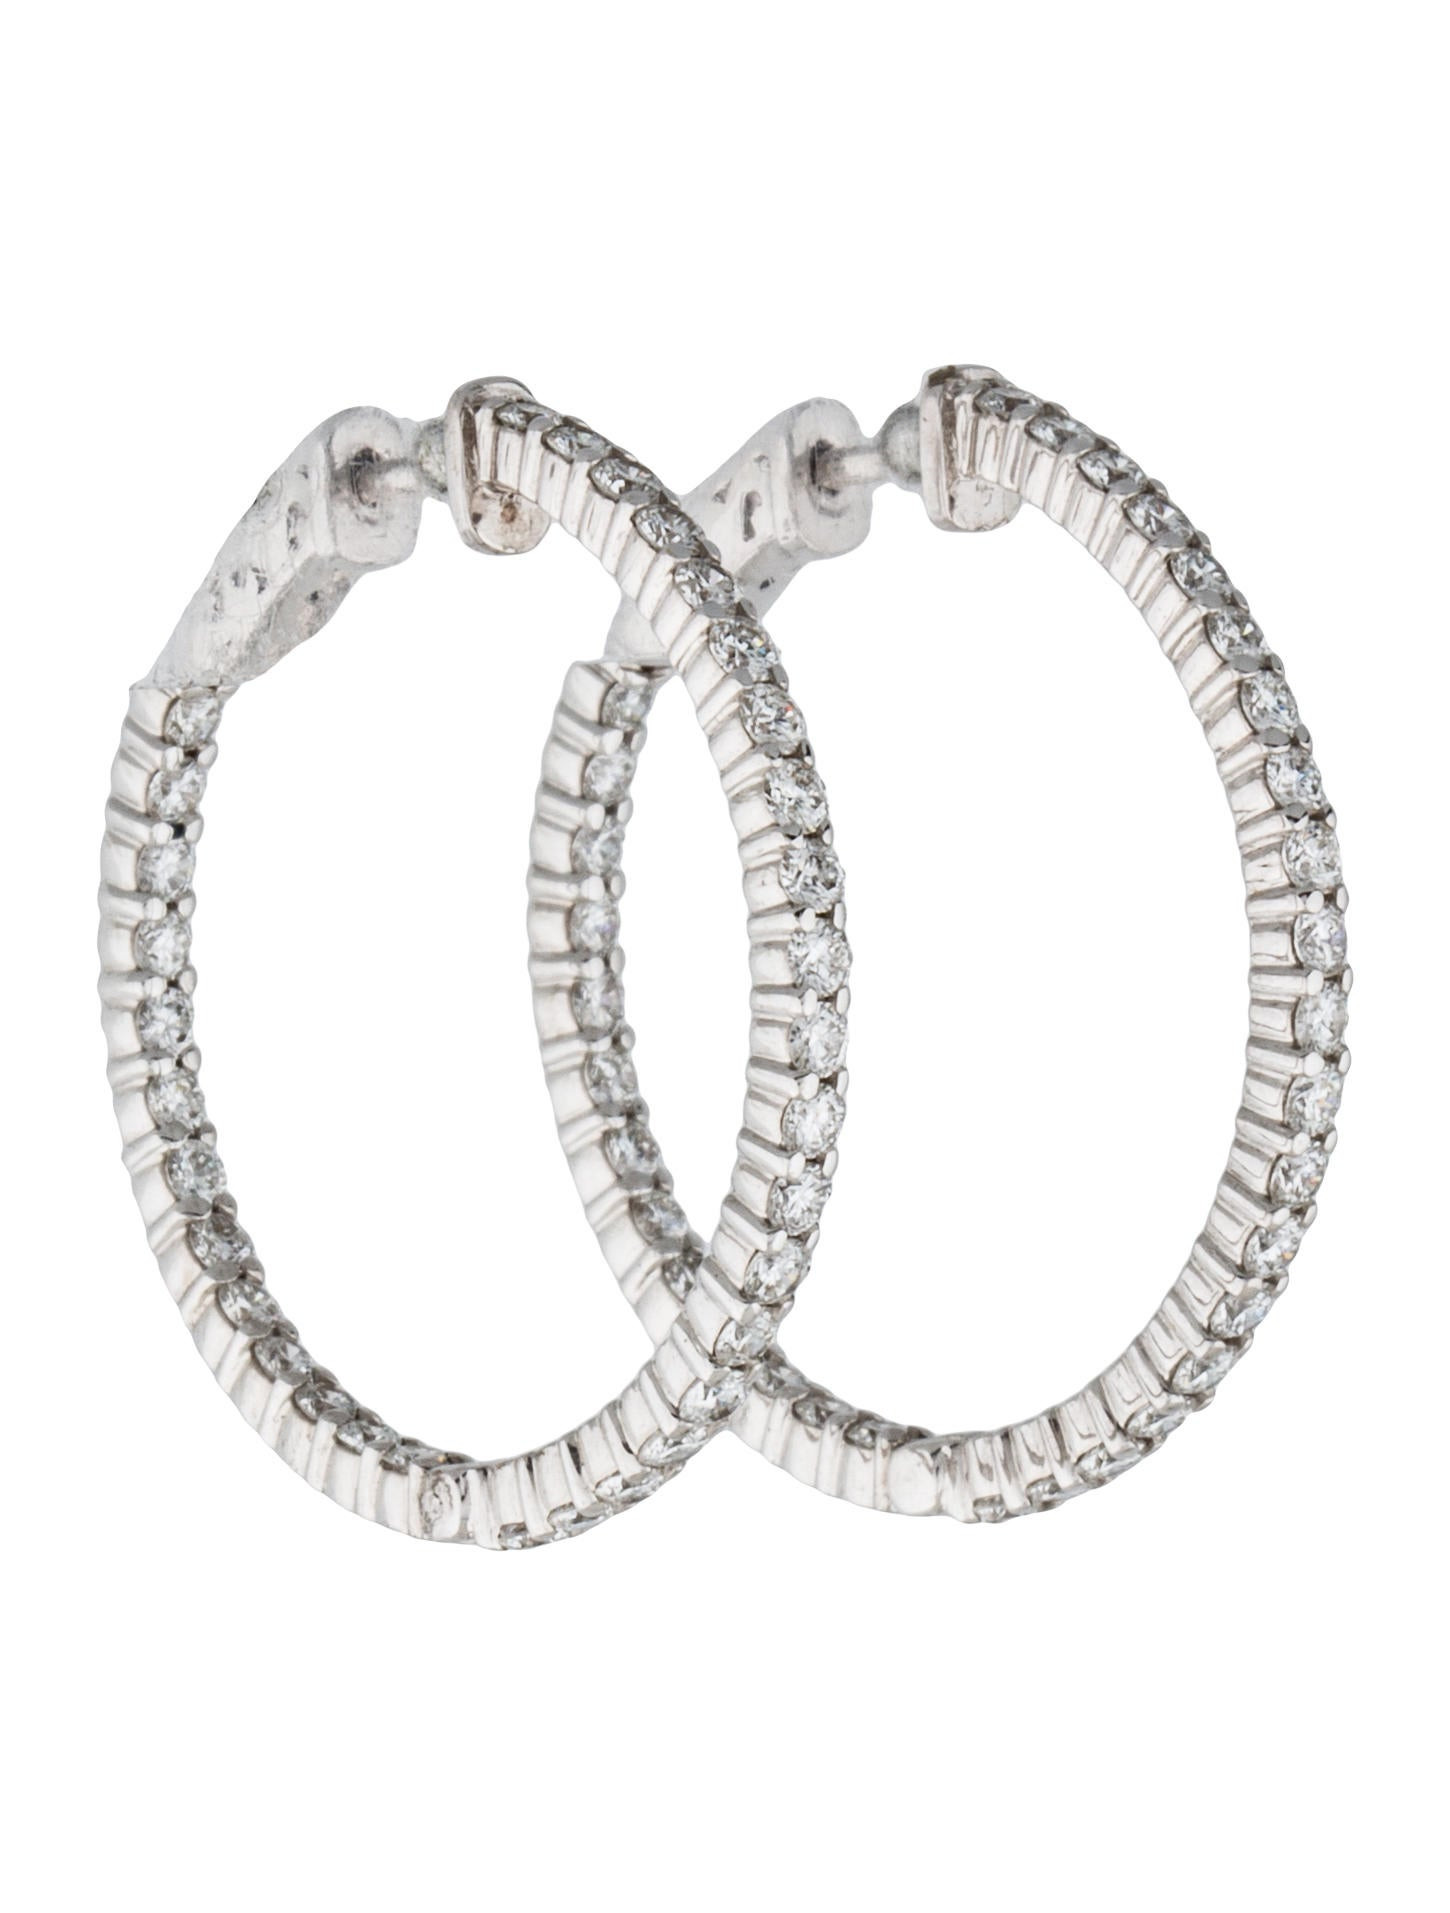 Inside Out Diamond Hoop Earrings
 Diamond Inside Out Hoop Earrings Earrings FJE